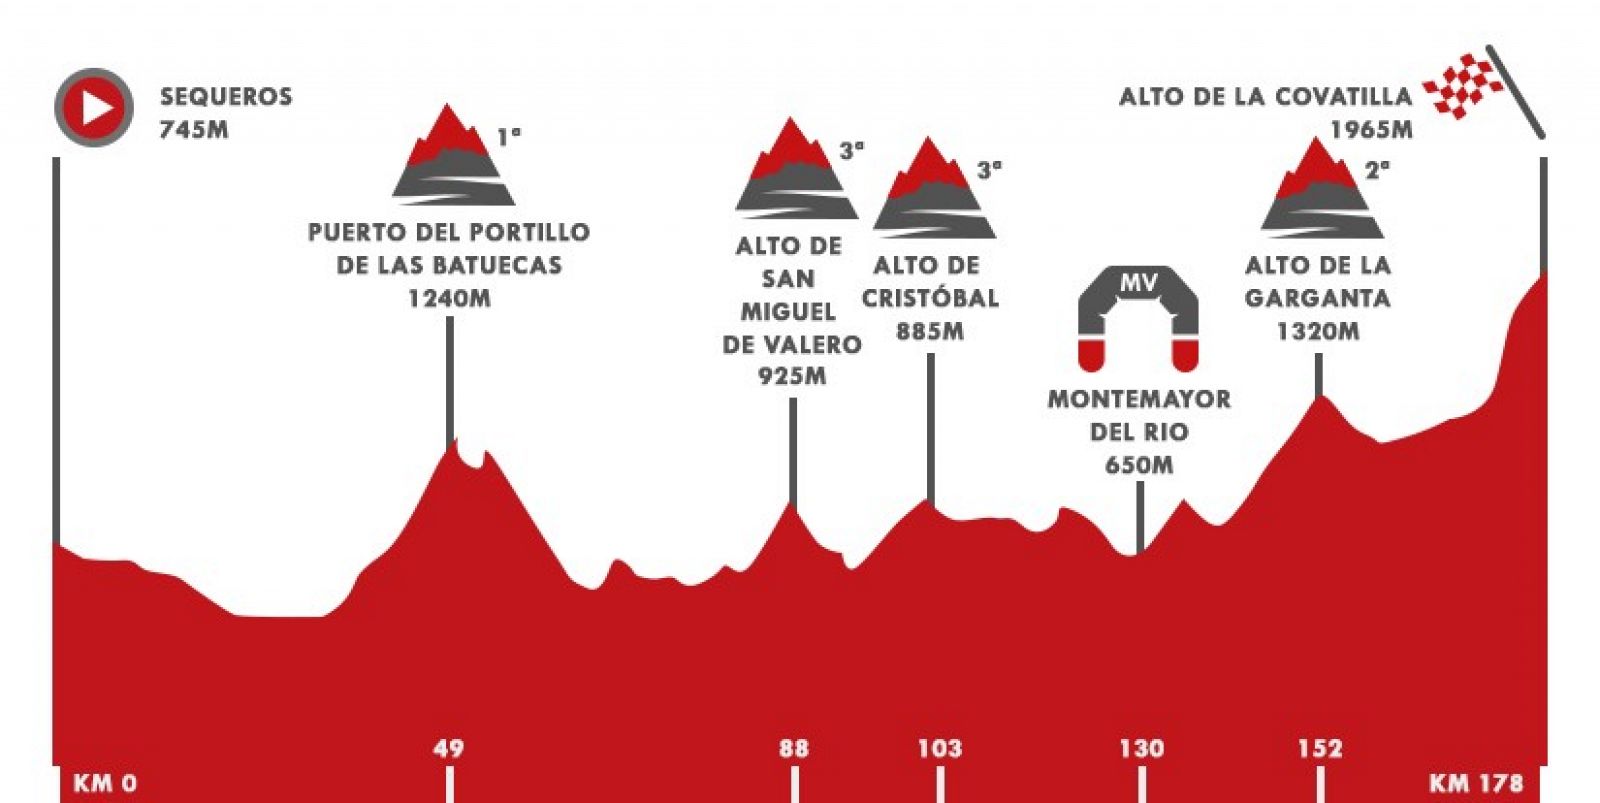 Vuelta 2020 Etapa 17 | Perfil de la Etapa 17 entre Sequeros y Alto de la Covatilla